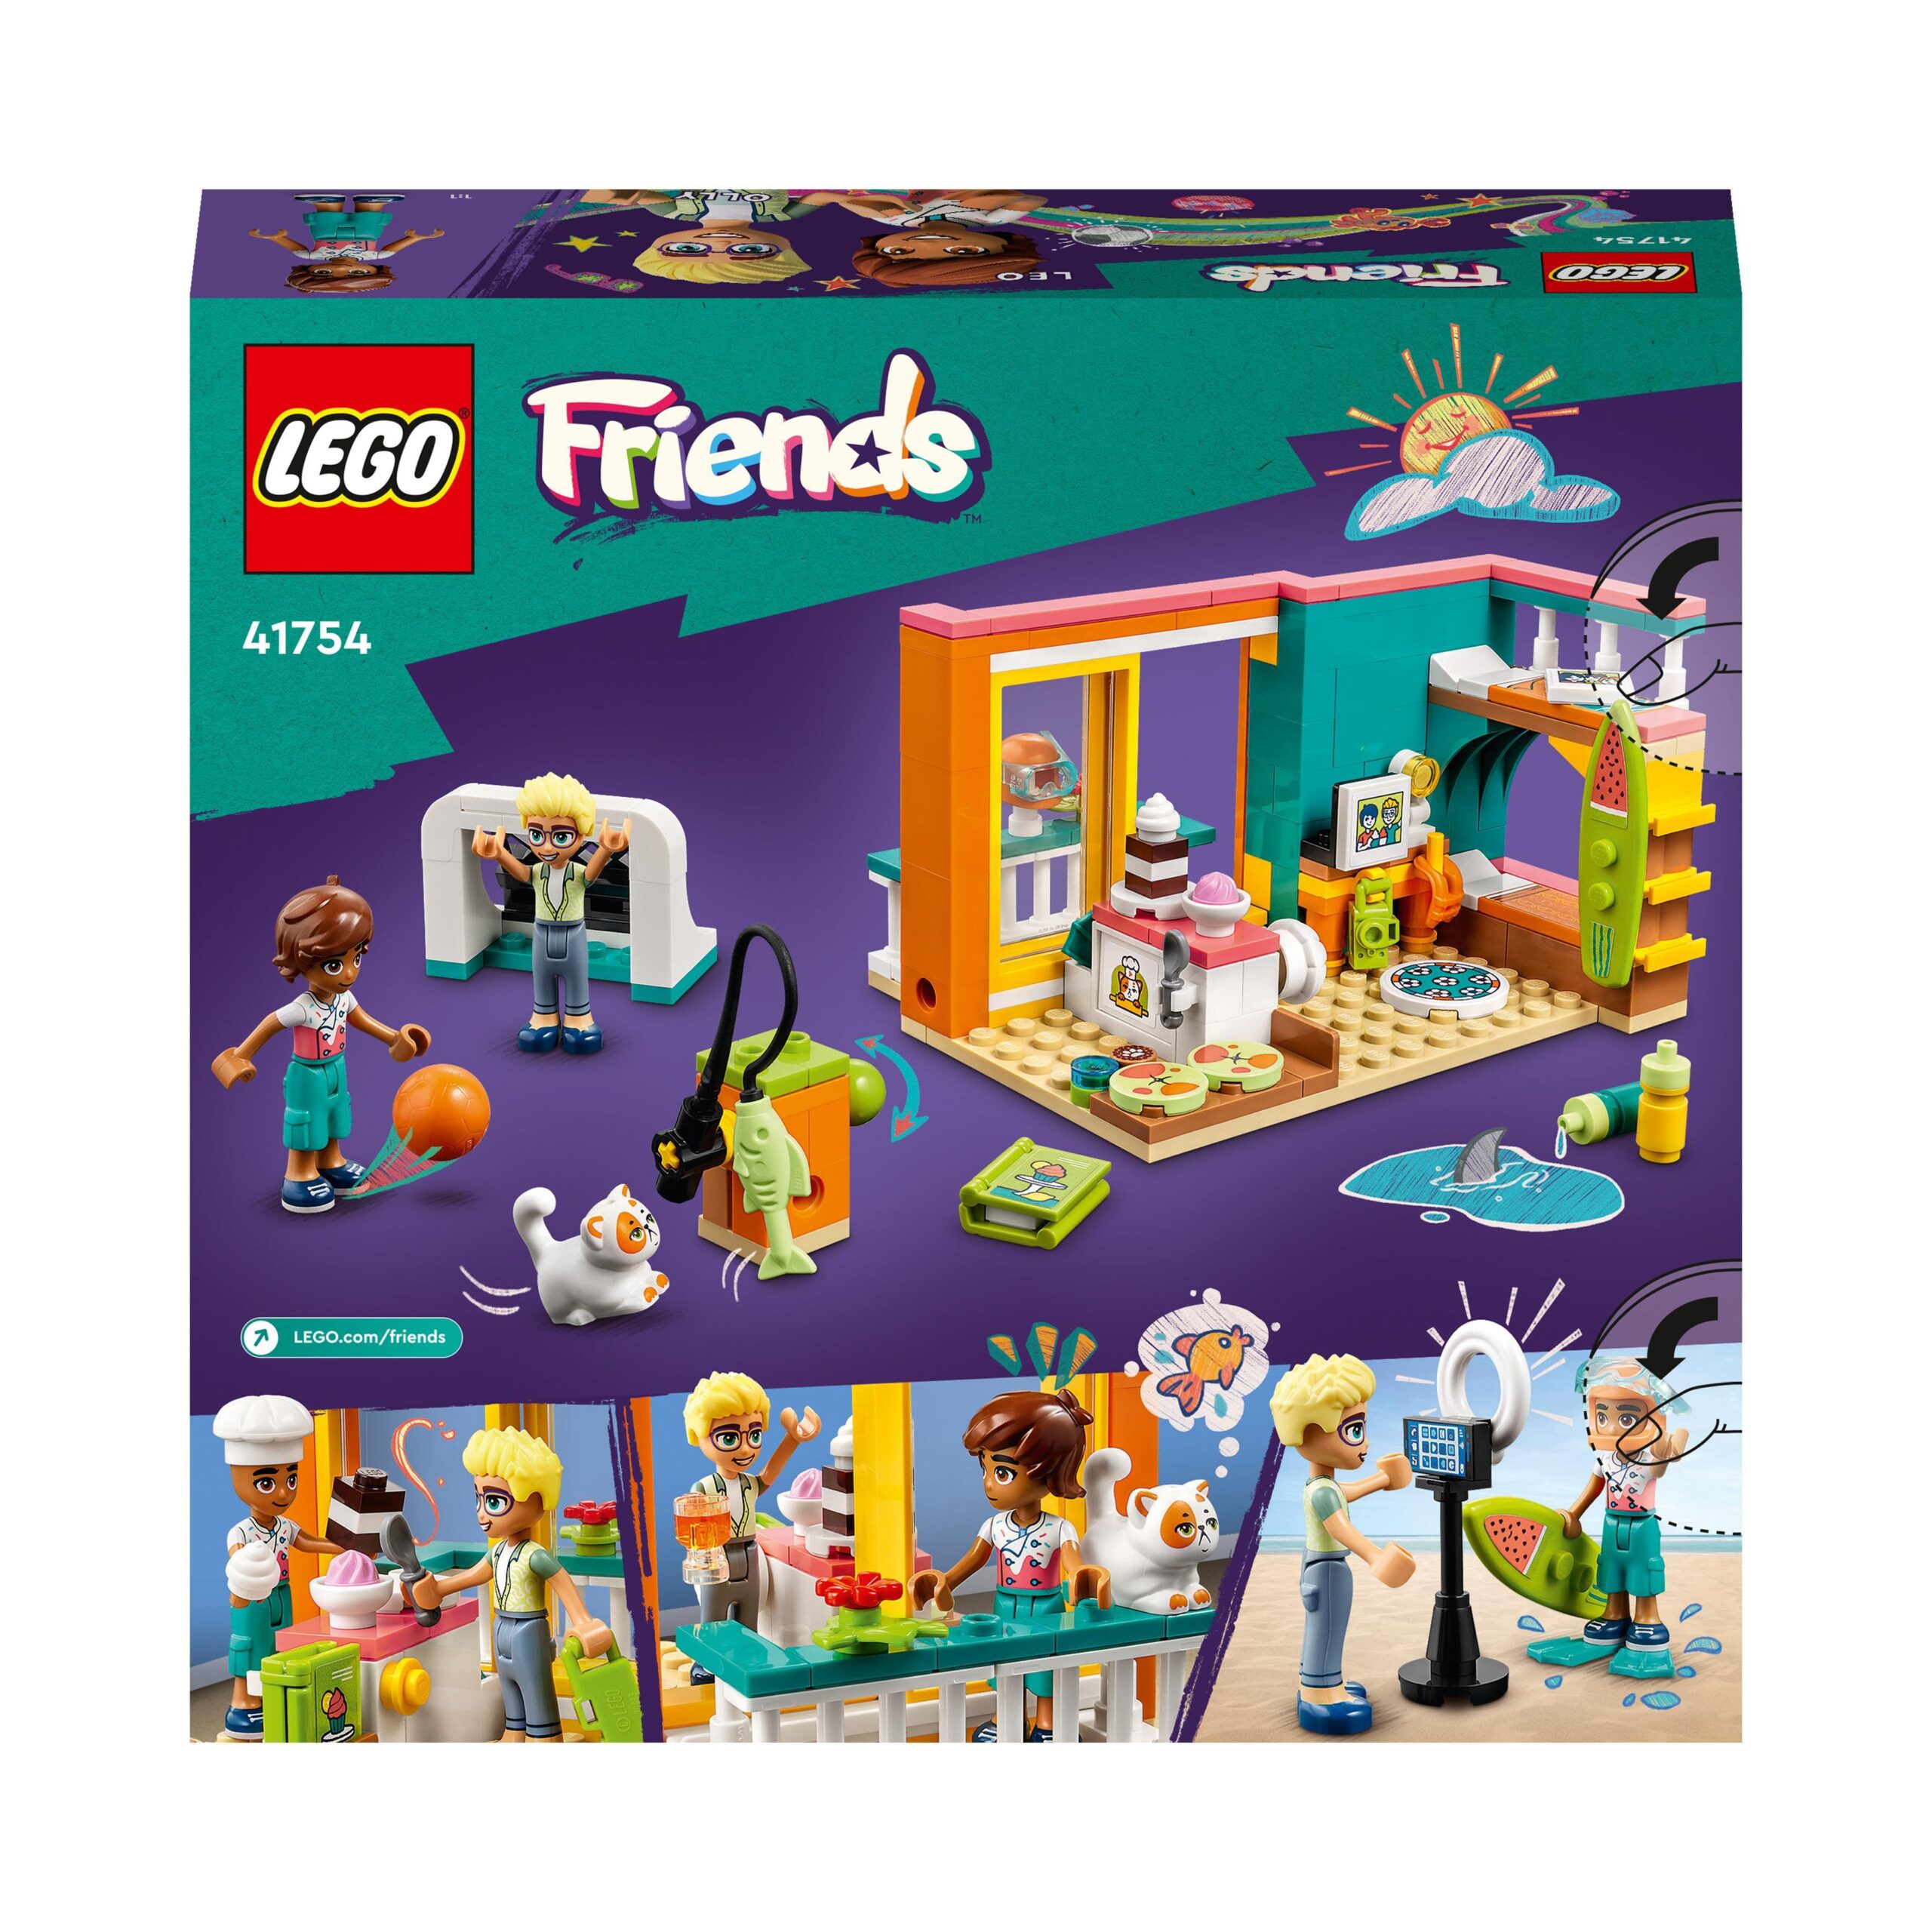 Lego friends 41754 la cameretta di leo, set camera da letto a tema cucina e video making, giochi per bambini 6+ da collezione - LEGO FRIENDS